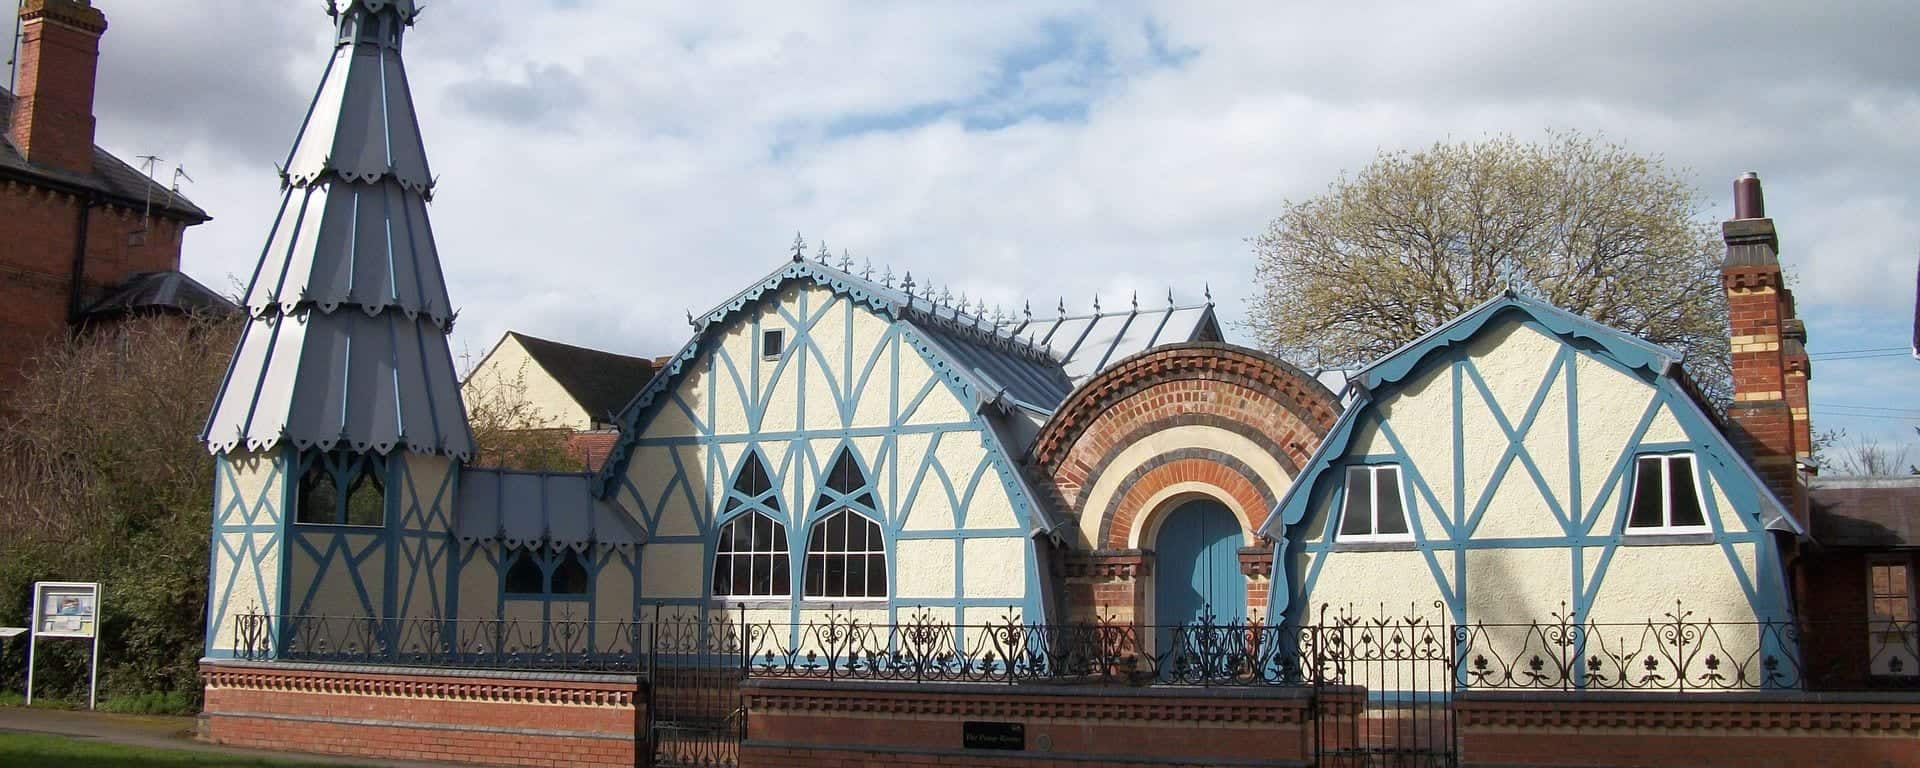 Tenbury Museum in UK